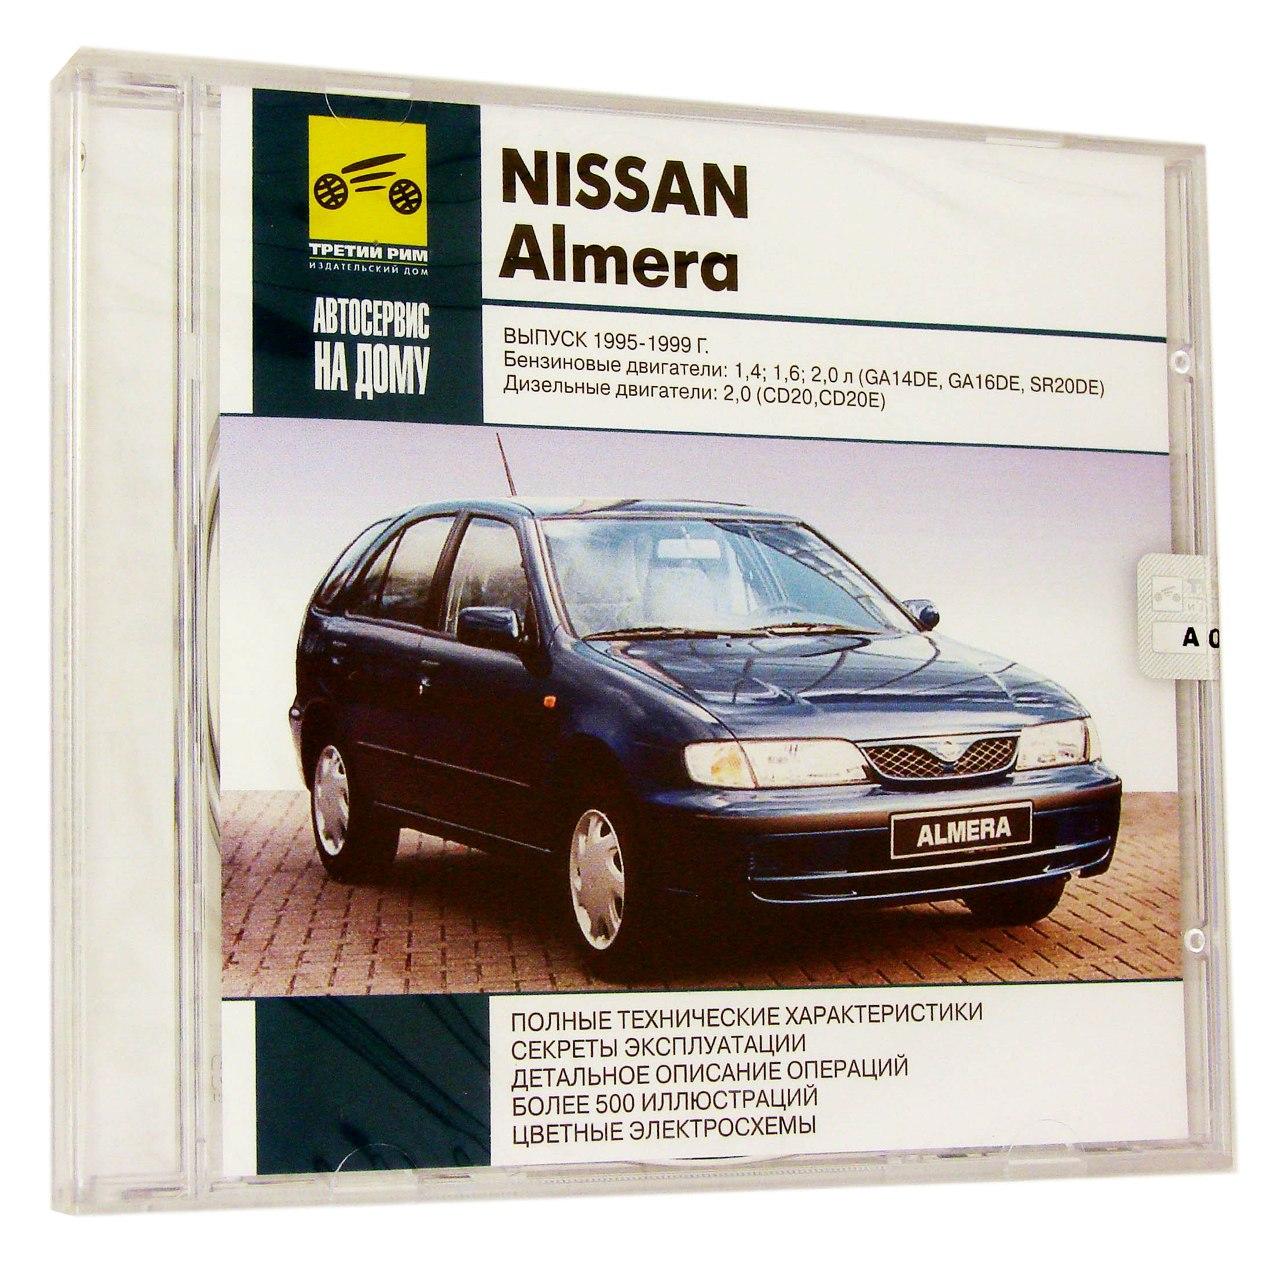 Компьютерный компакт-диск Nissan Almera Выпуск 1995-1999 Автосервис на дому. (ПК), фирма "RMG Multimedia", 1CD